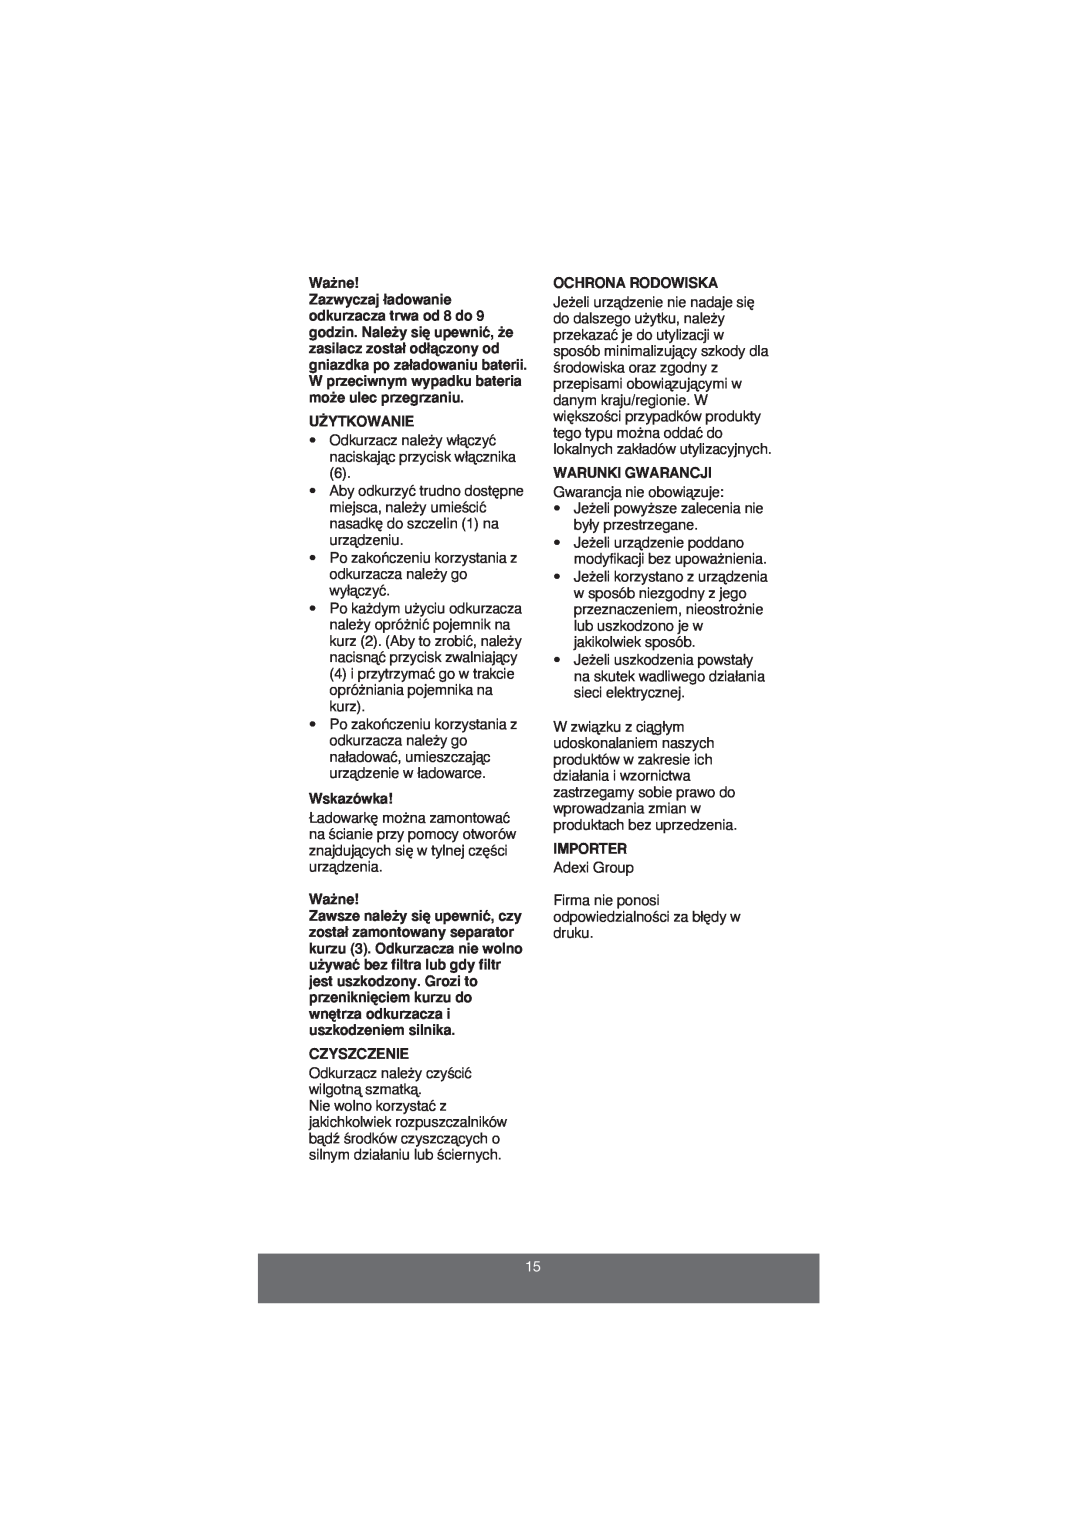 Melissa 640-060 manual Wa˝ne, U˚Ytkowanie, Wskazówka, Czyszczenie, Ochrona Rodowiska, Warunki Gwarancji, Importer 